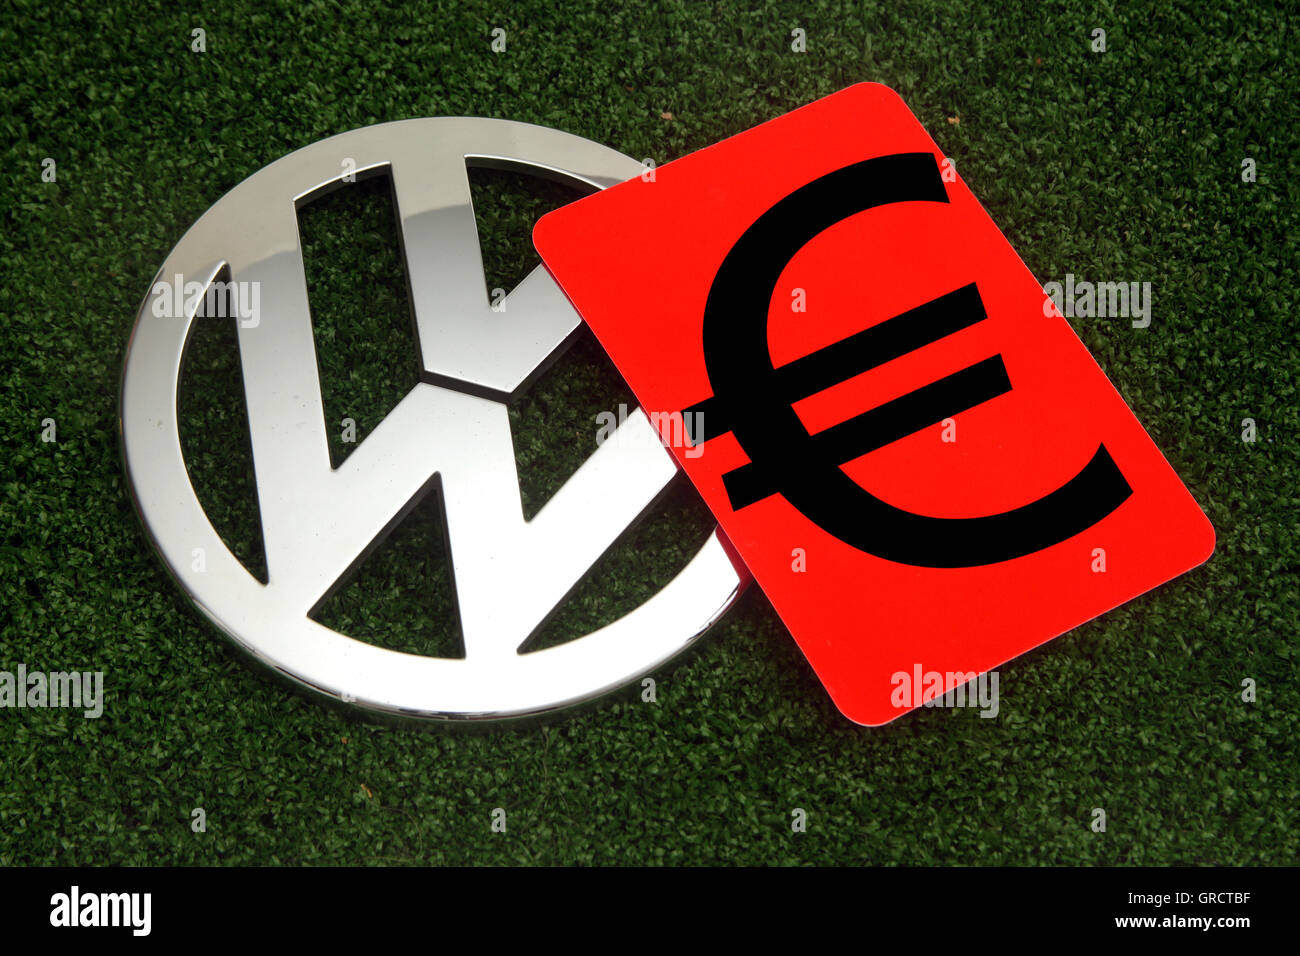 Simbolo Euro su carta rossa con Vw segno sul tappeto erboso verde Foto Stock